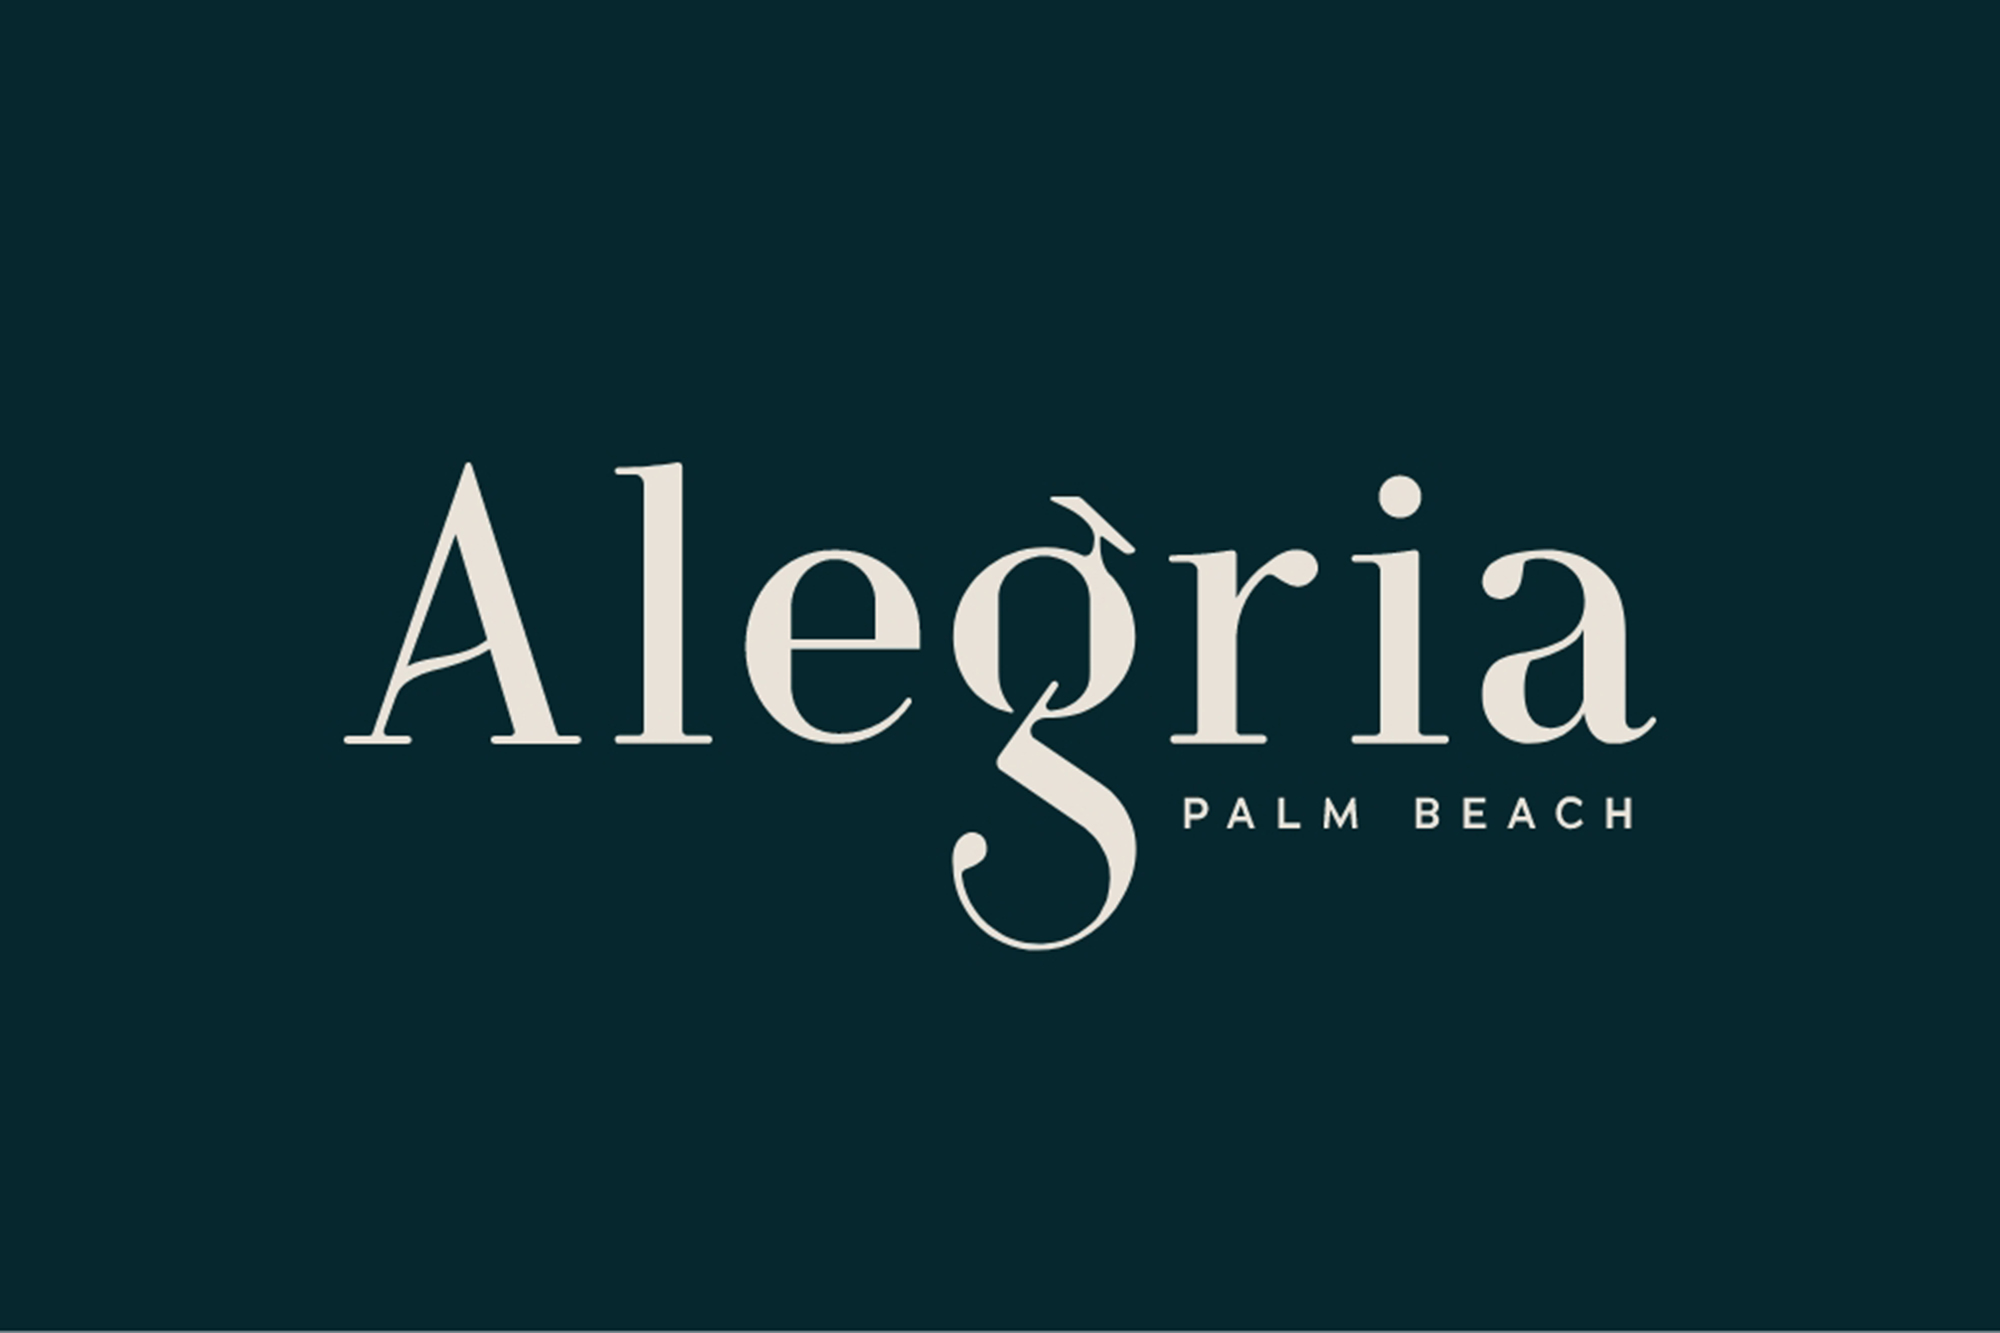 Alegria Palm Beach 01